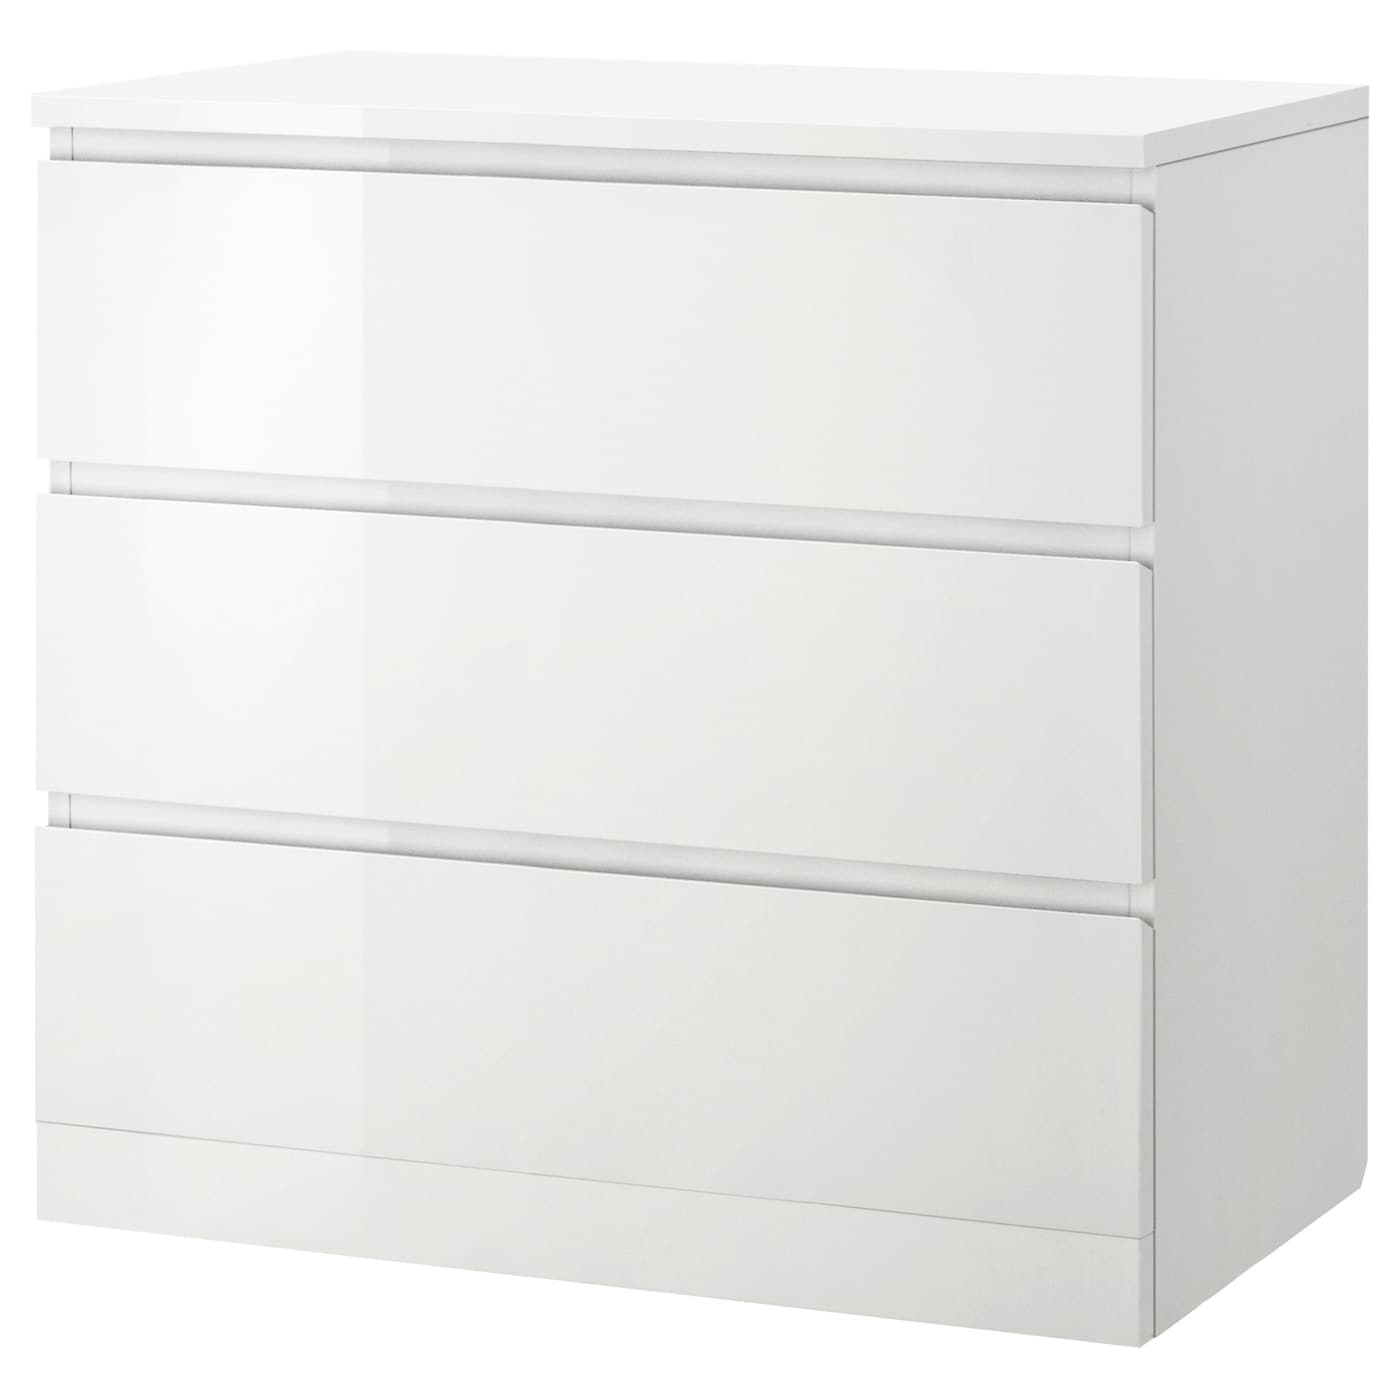 Комод - IKEA MALM/МАЛЬМ ИКЕА, 78х48х80 см, белый глянцевый